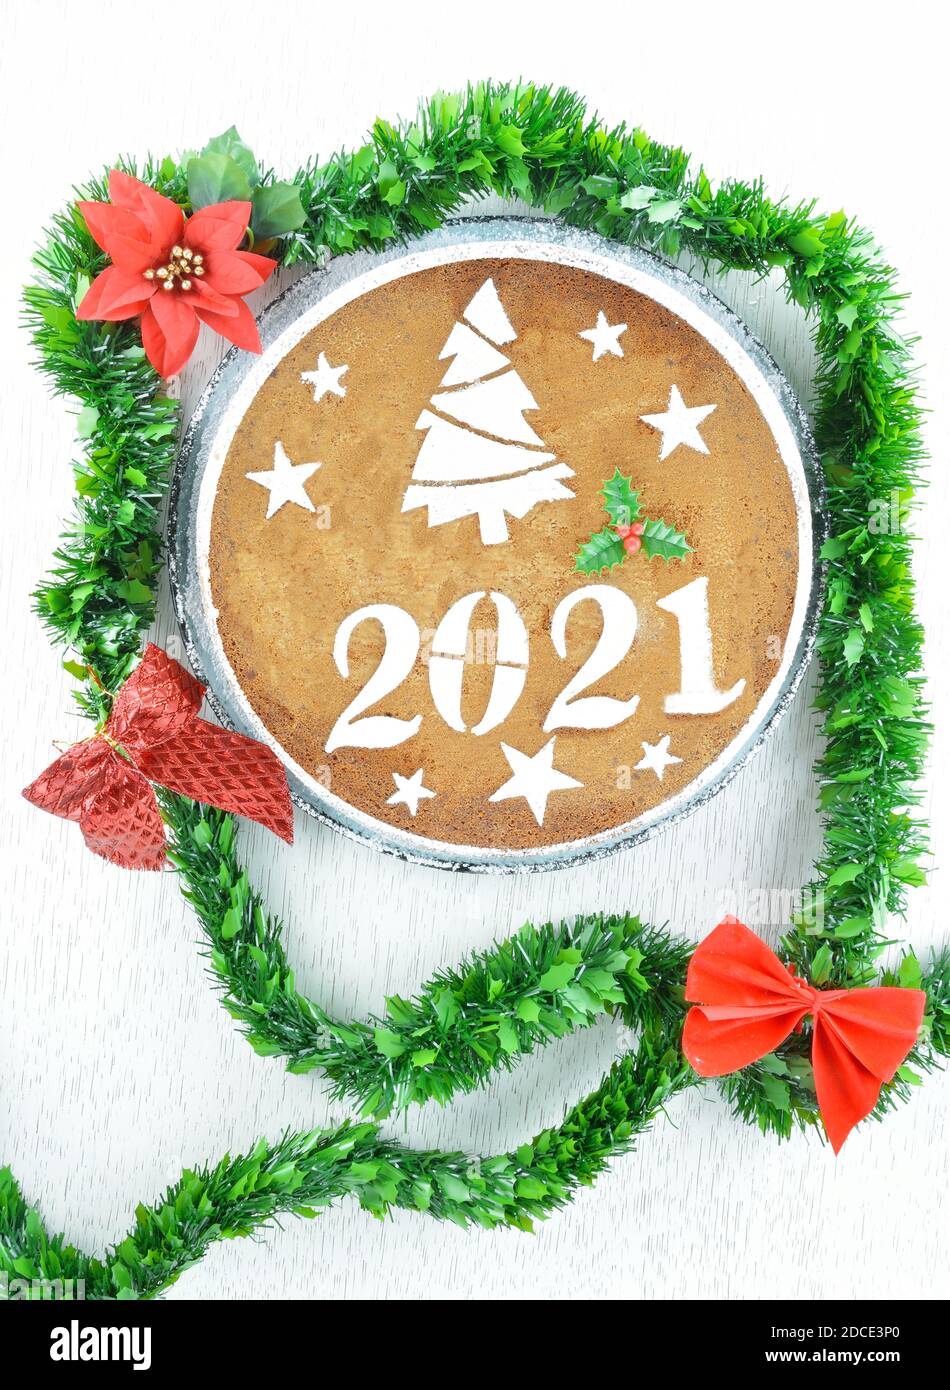 gâteau du nouvel an 2021 décoratif avec guirlande verte et rouge arcs Banque D'Images